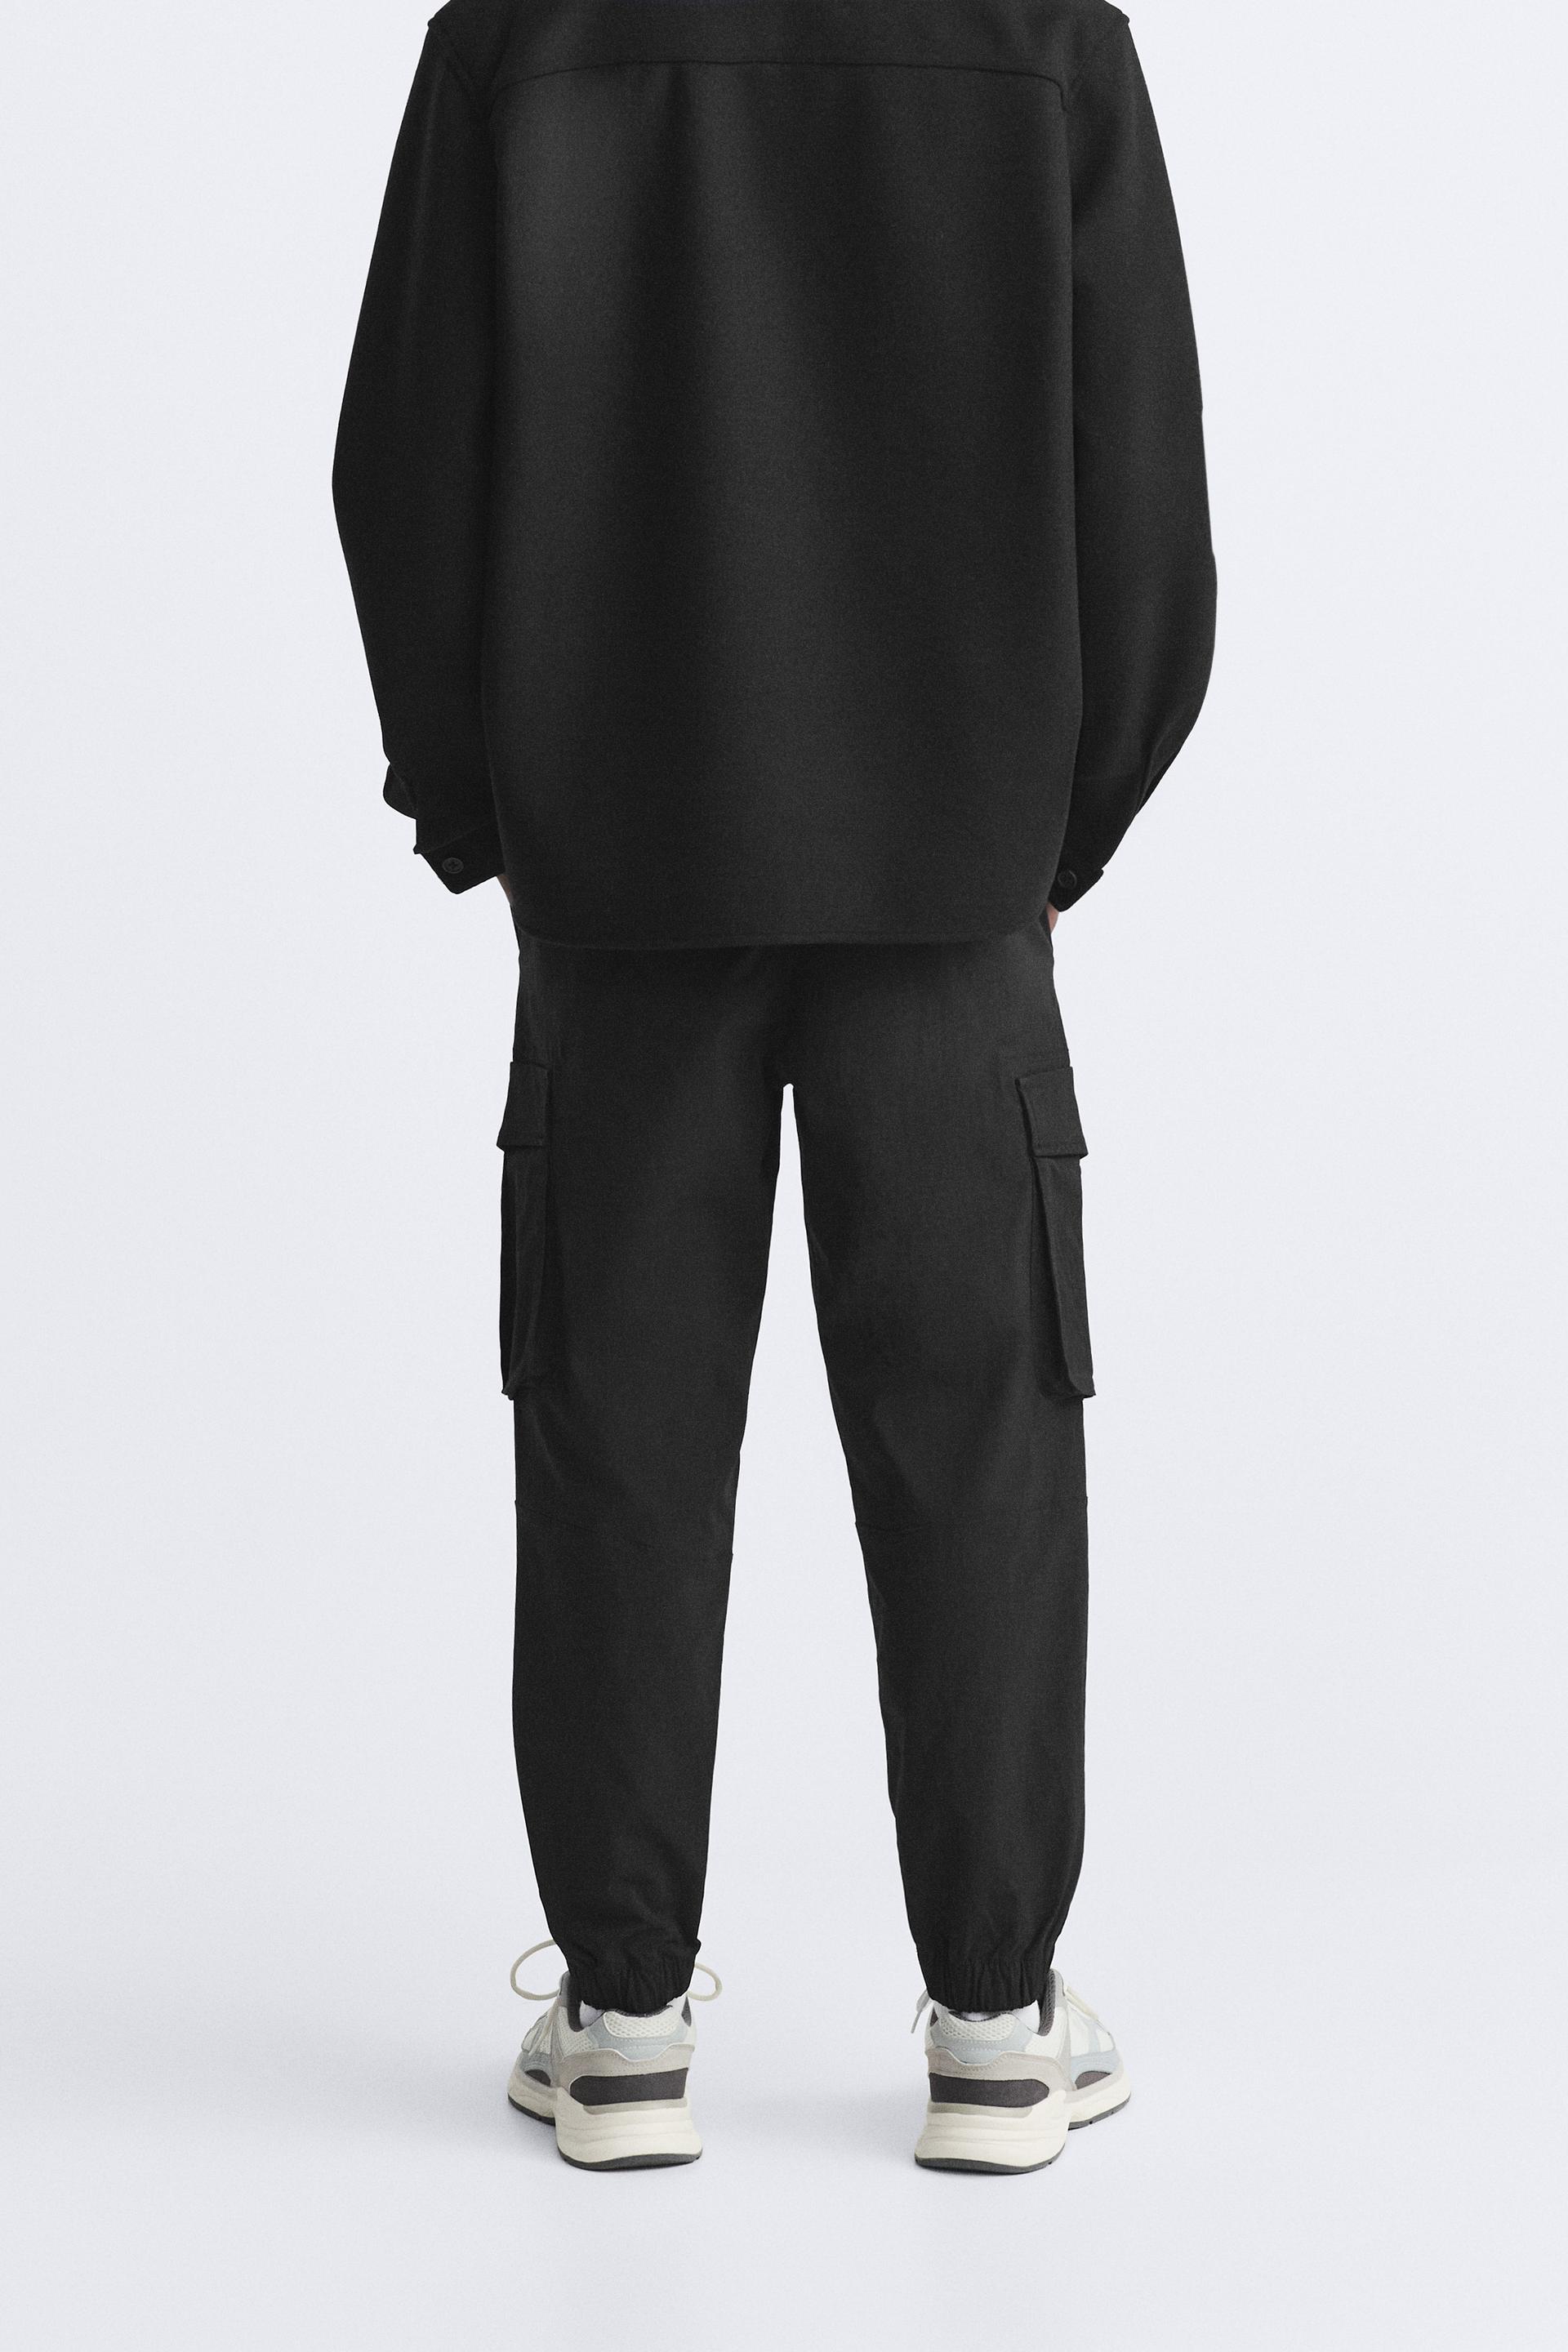 Pantalón Zara Jogger Cargo Negro Hombre, Reciclado